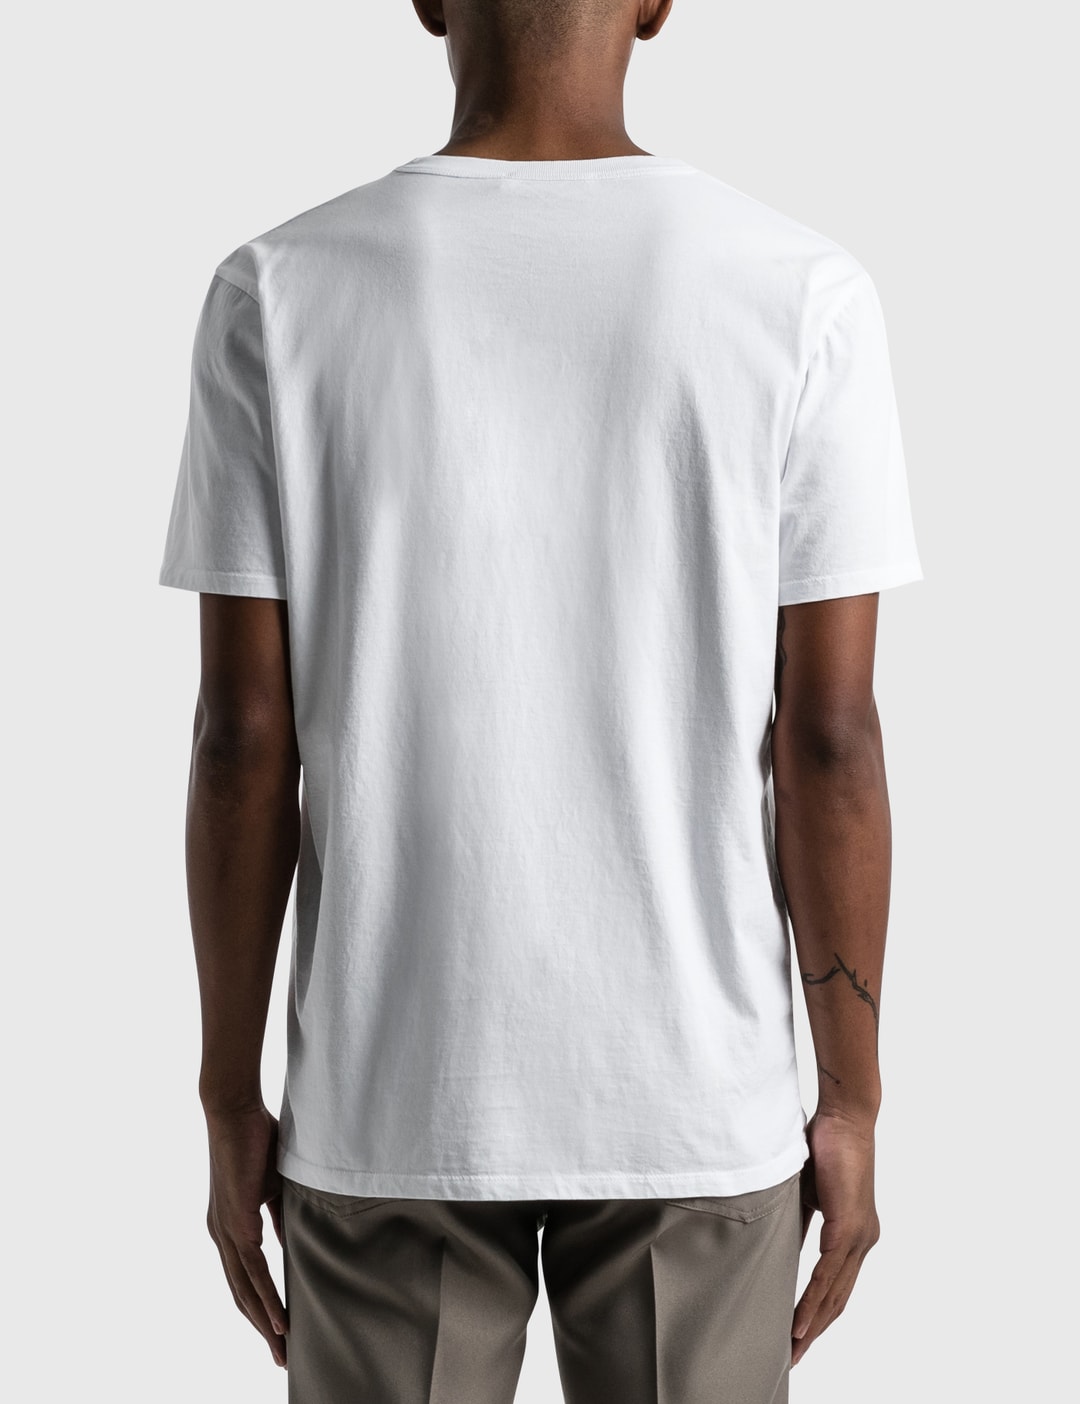 Maison Kitsuné - Profile Fox Patch Pocket T-shirt | HBX - Globally ...